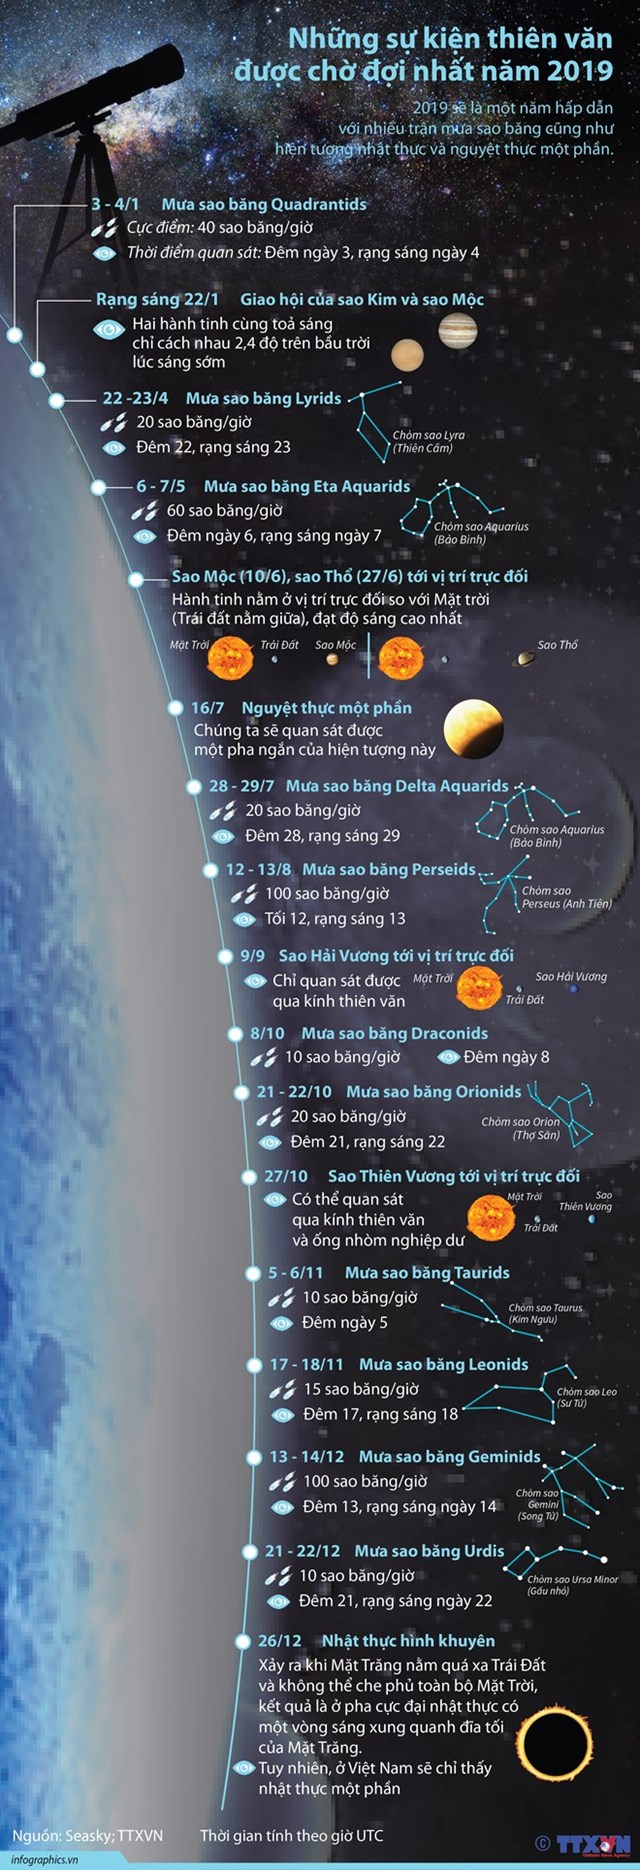 [Infographic] Các hiện tượng thiên văn kỳ thú của năm 2019 - Ảnh 1